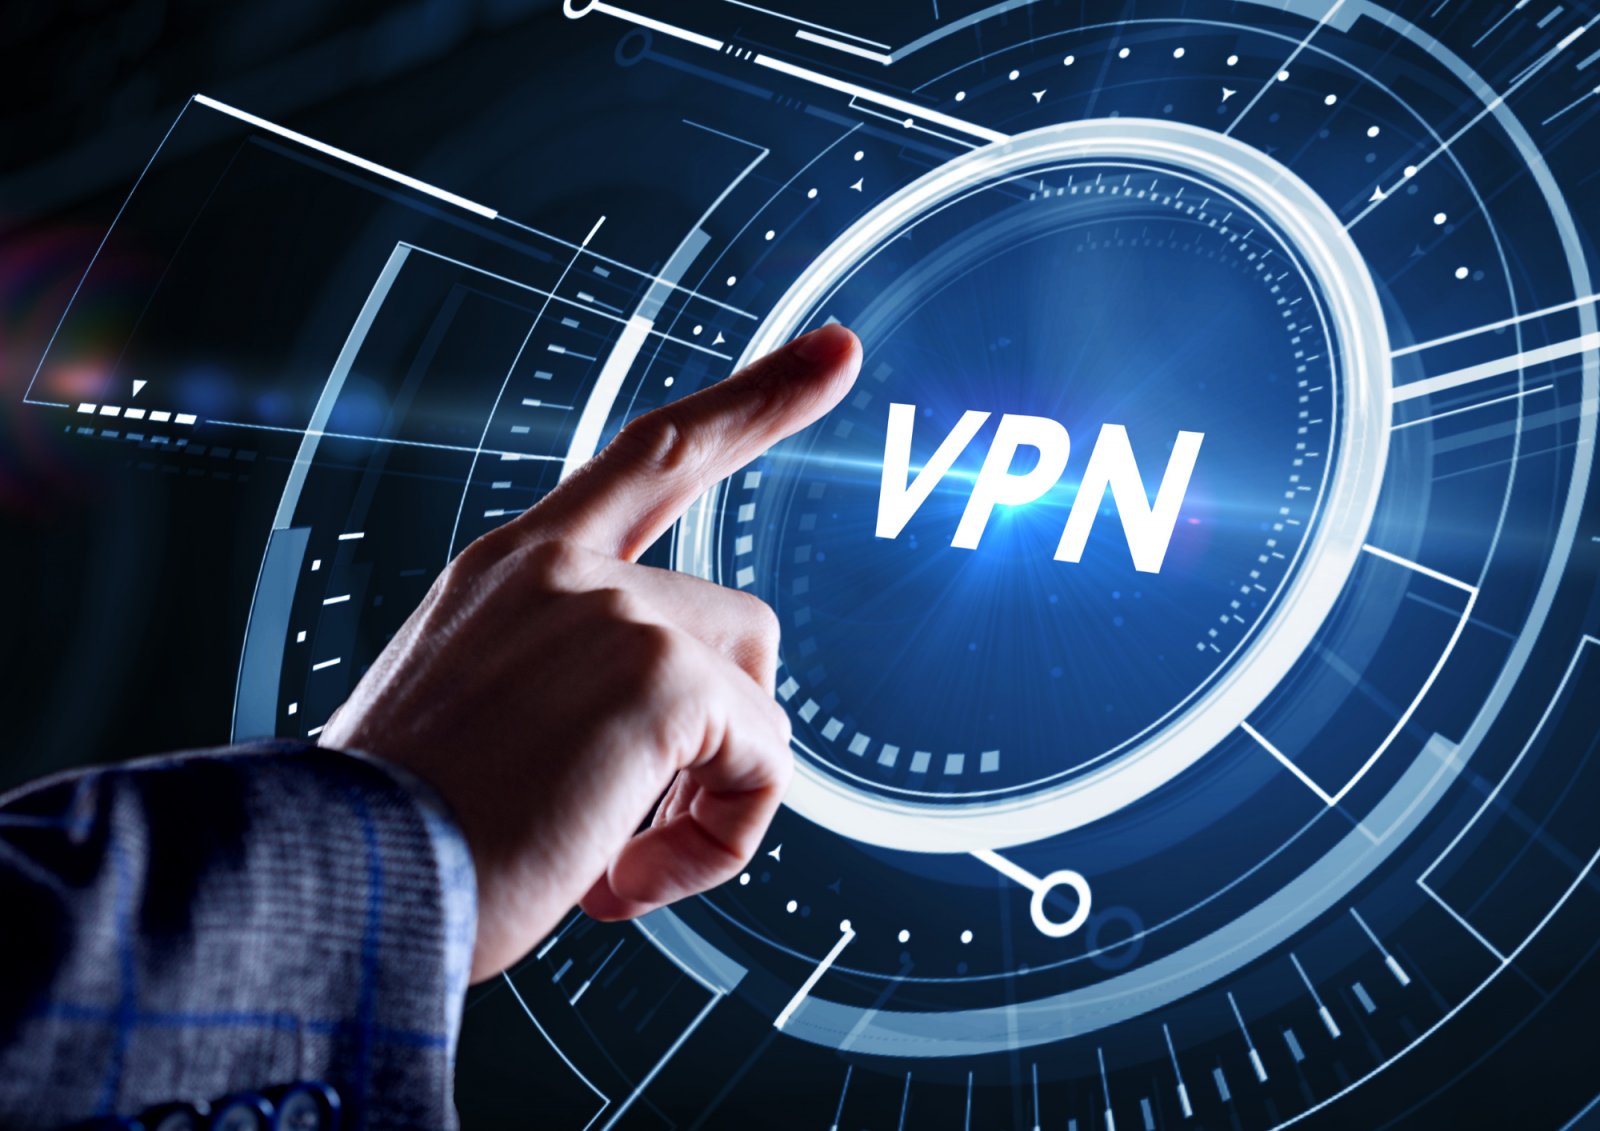 Cara Mengamankan Perangkat IoT Anda Dengan VPN